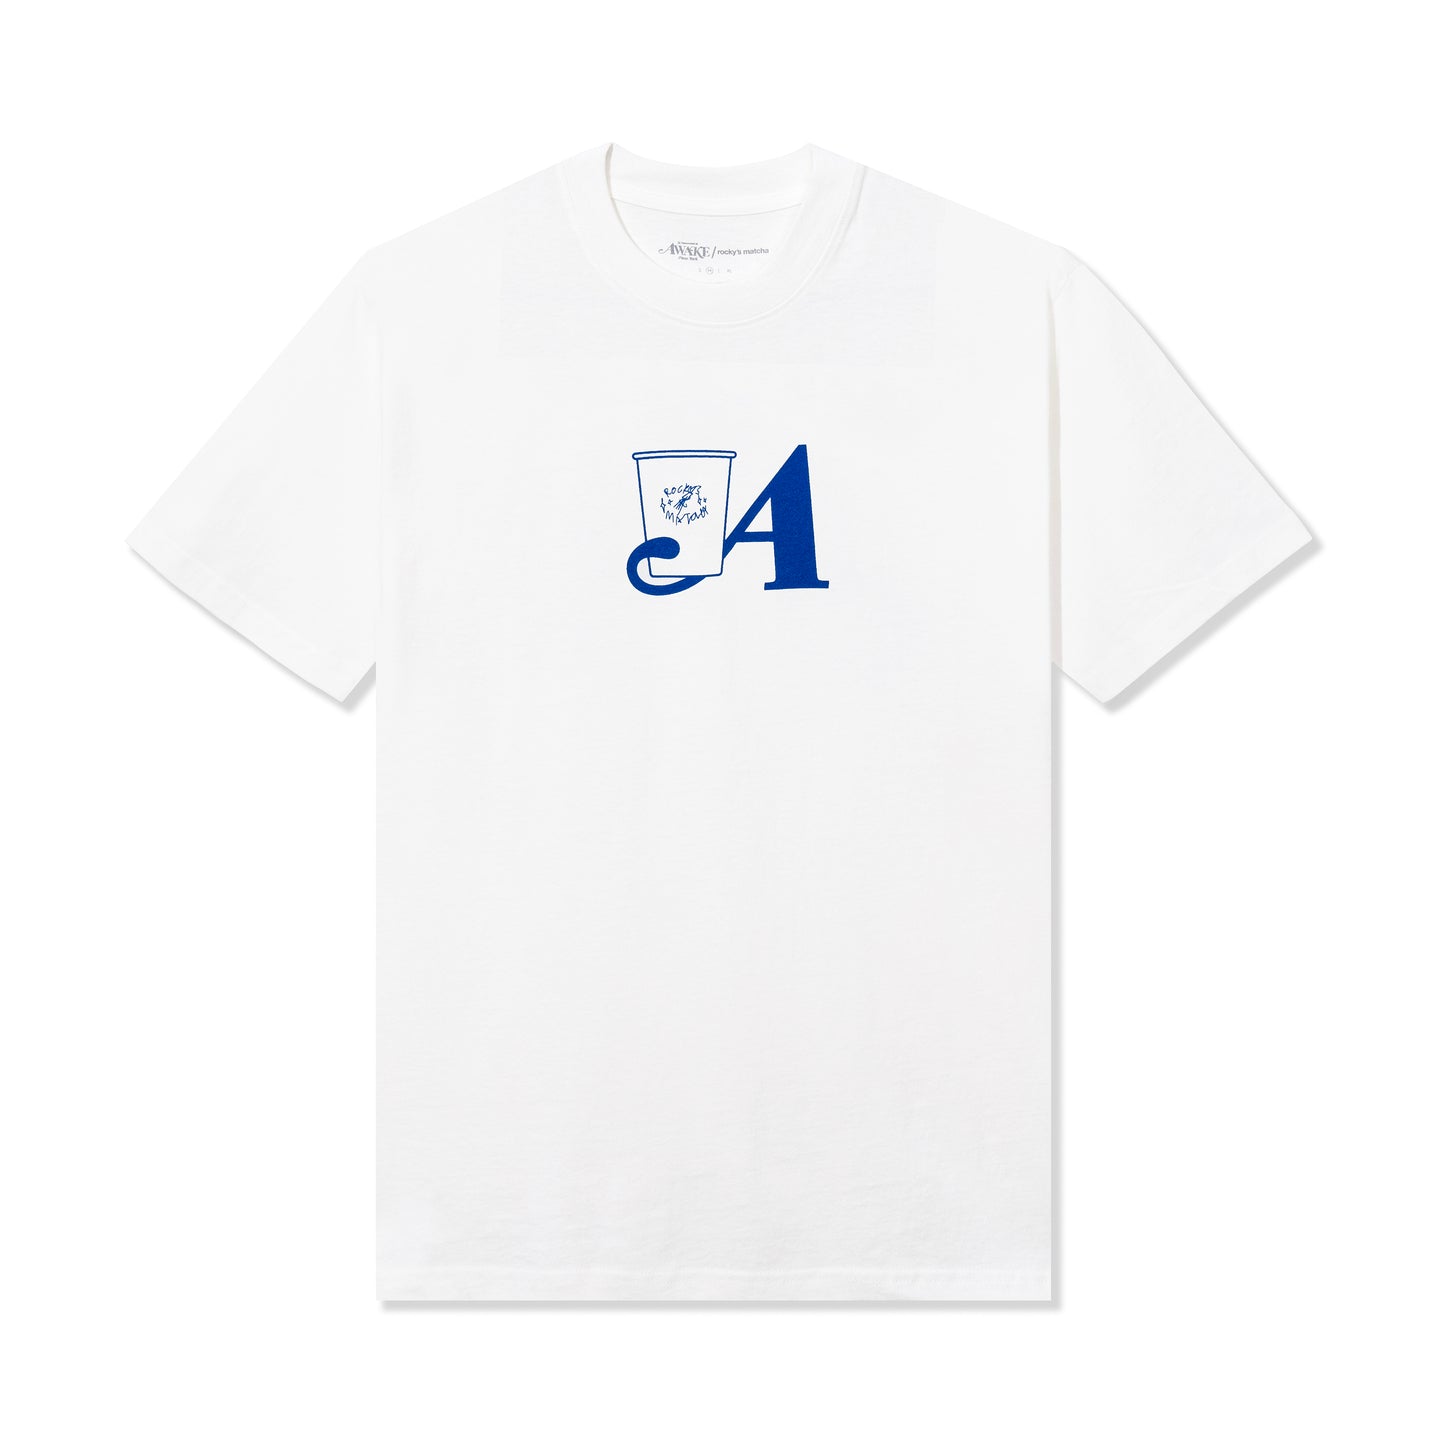 Rocky's Matcha & Awake NY T-Shirt - White